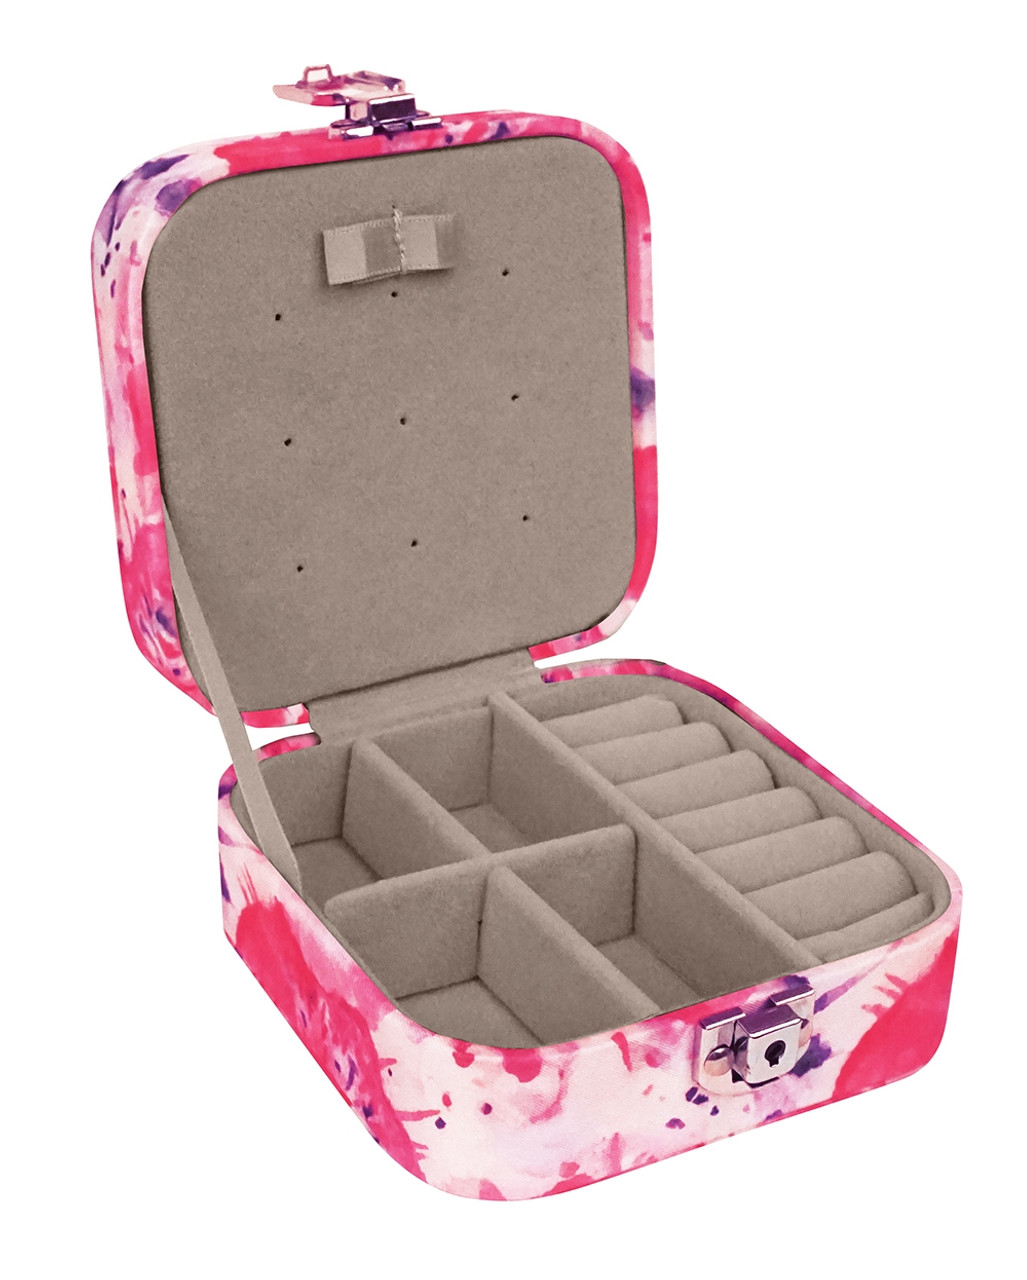 Portable Jewelry Storage Box